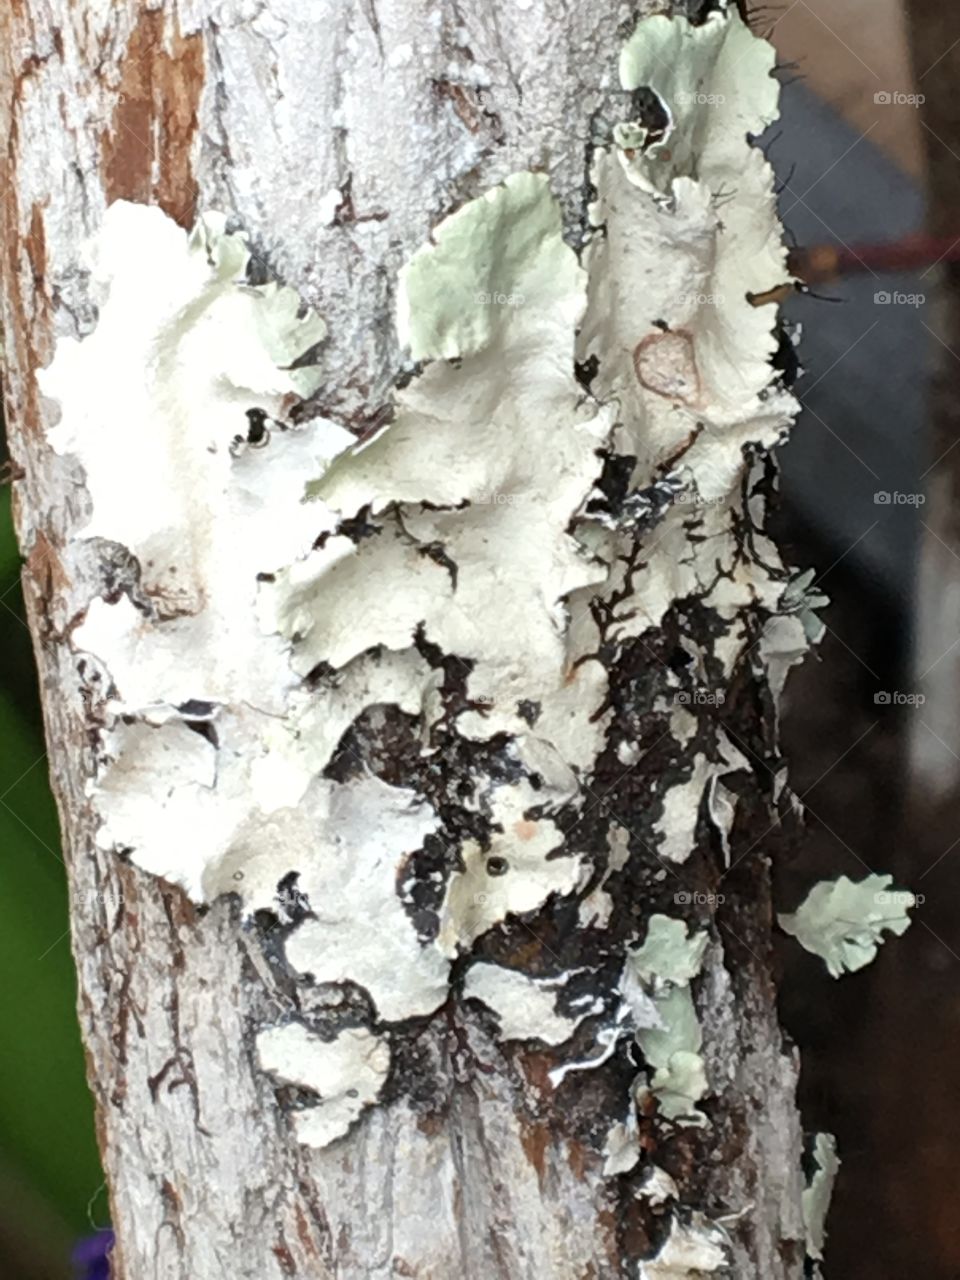 Lichen on tree branch 